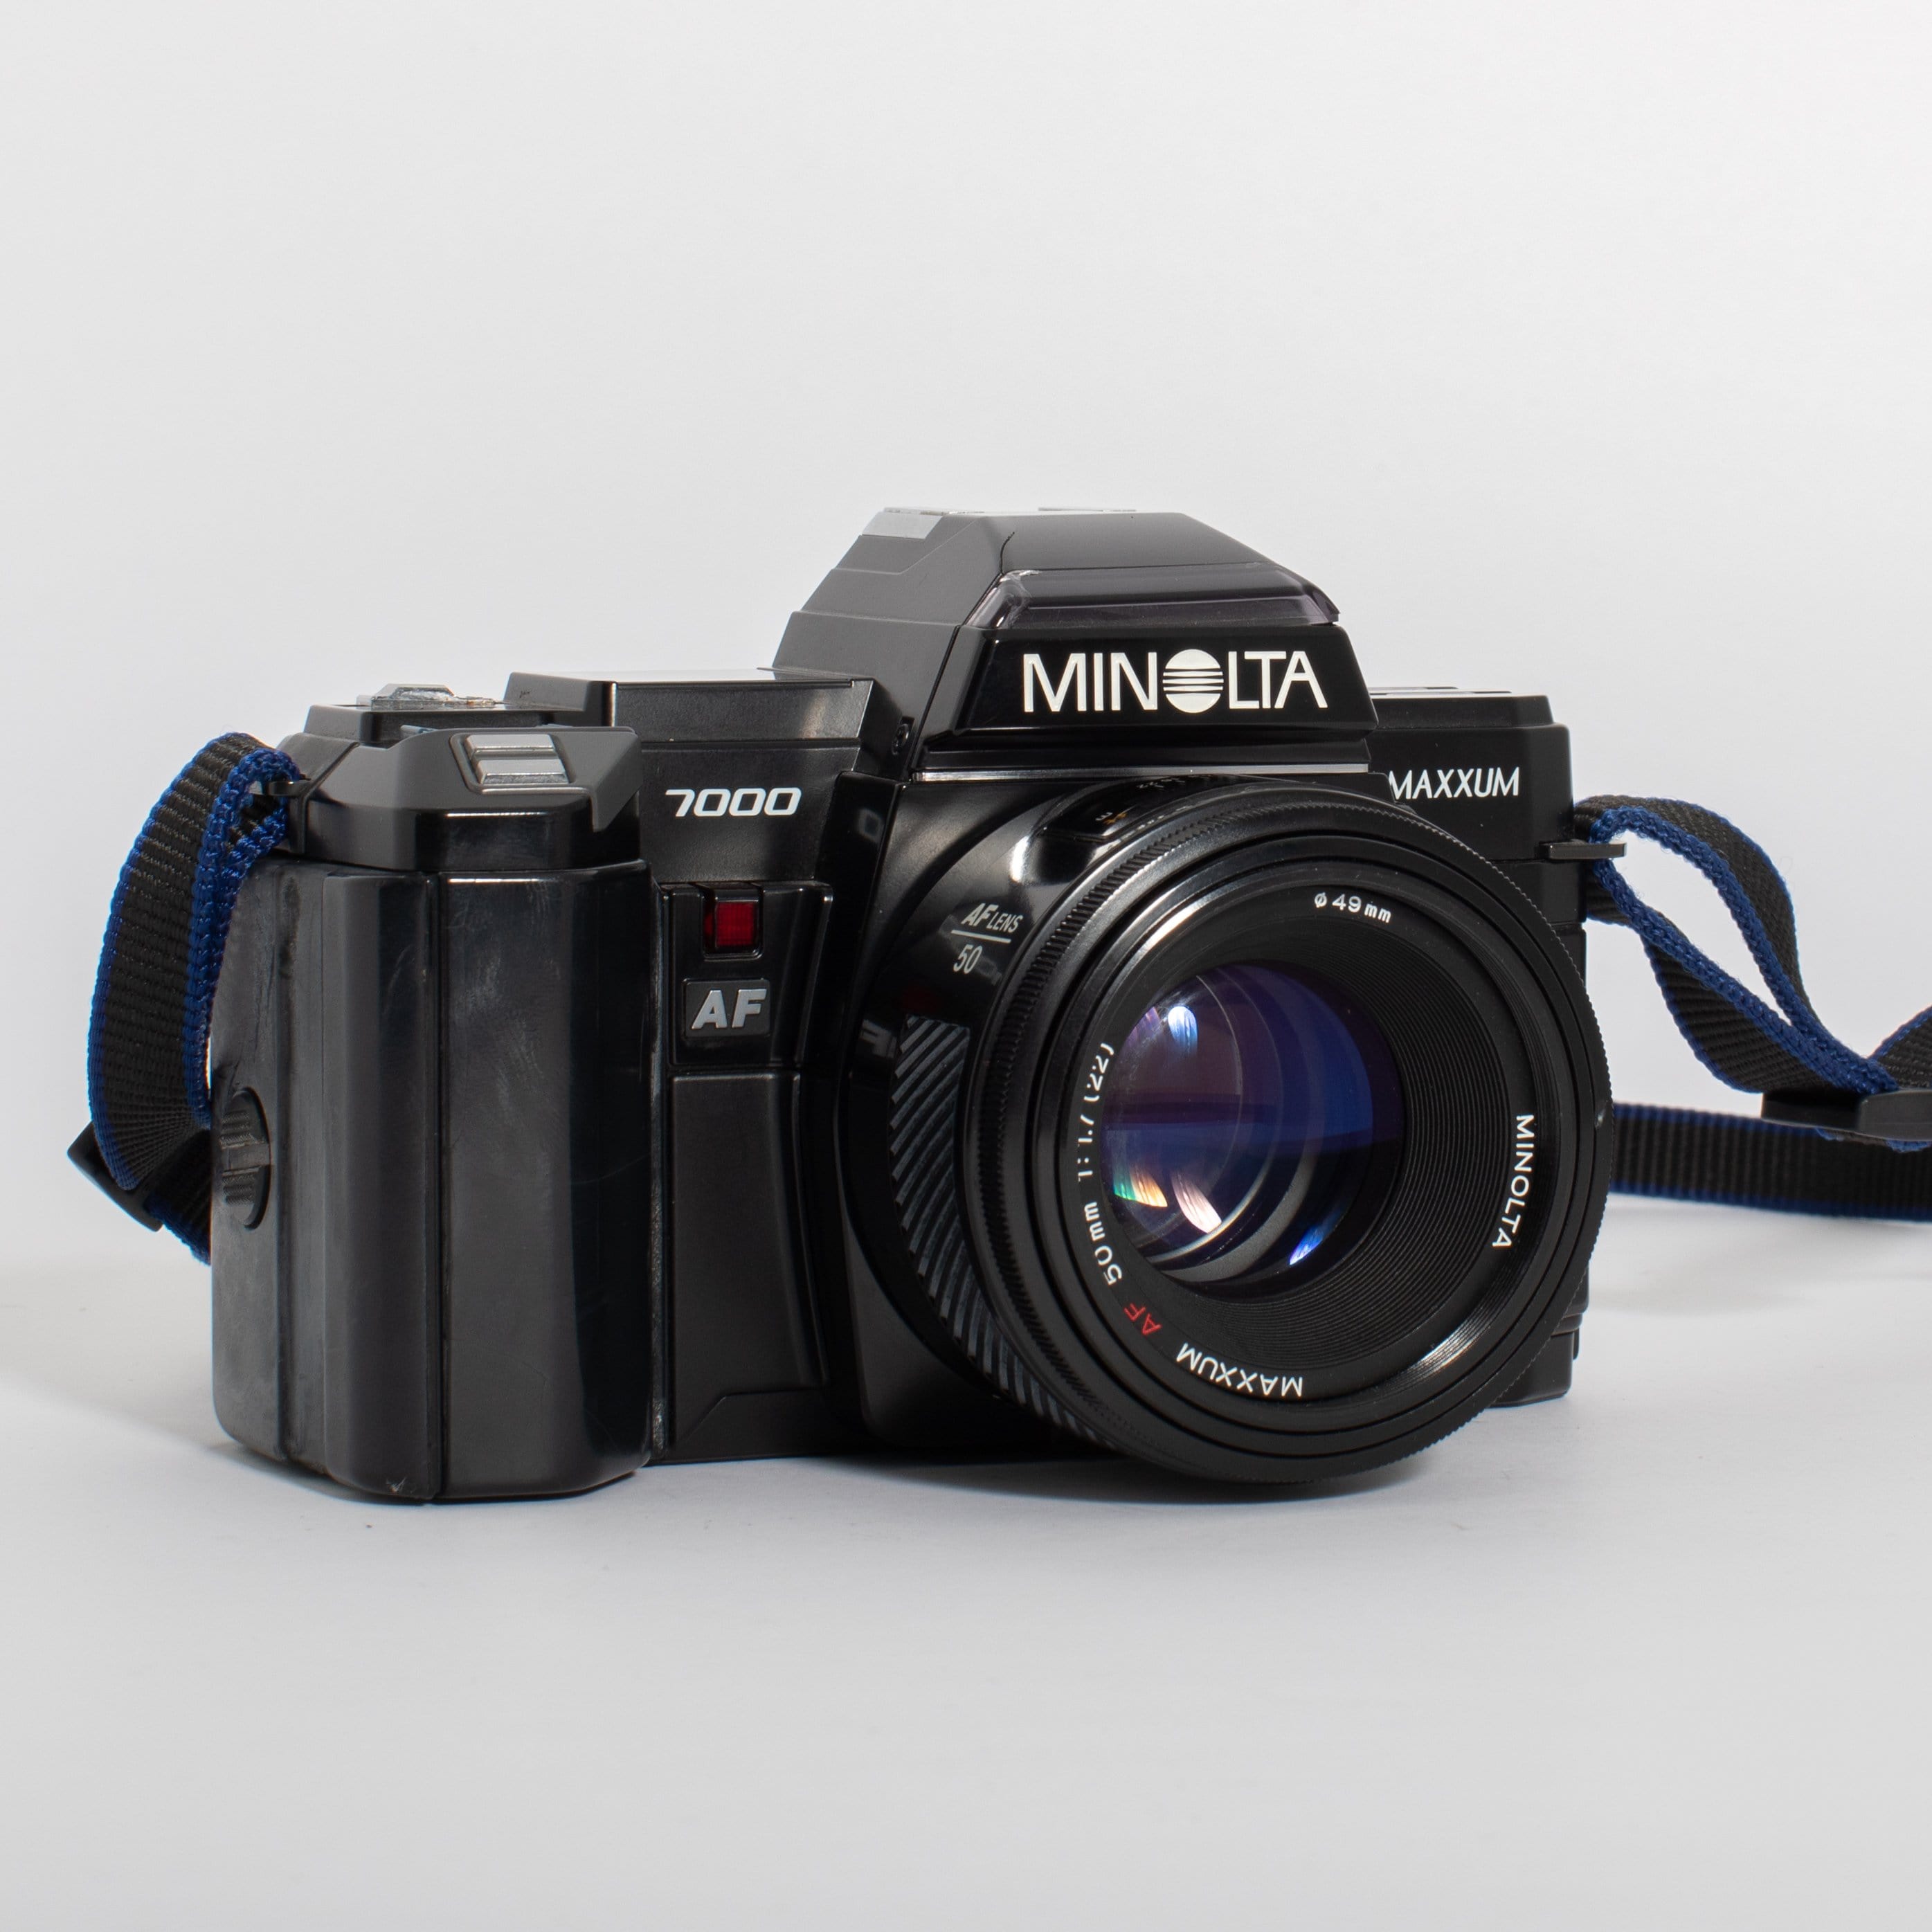 Minolta Maxxum 7000 with AF 50mm f/1.7 Lens – Film Supply Club